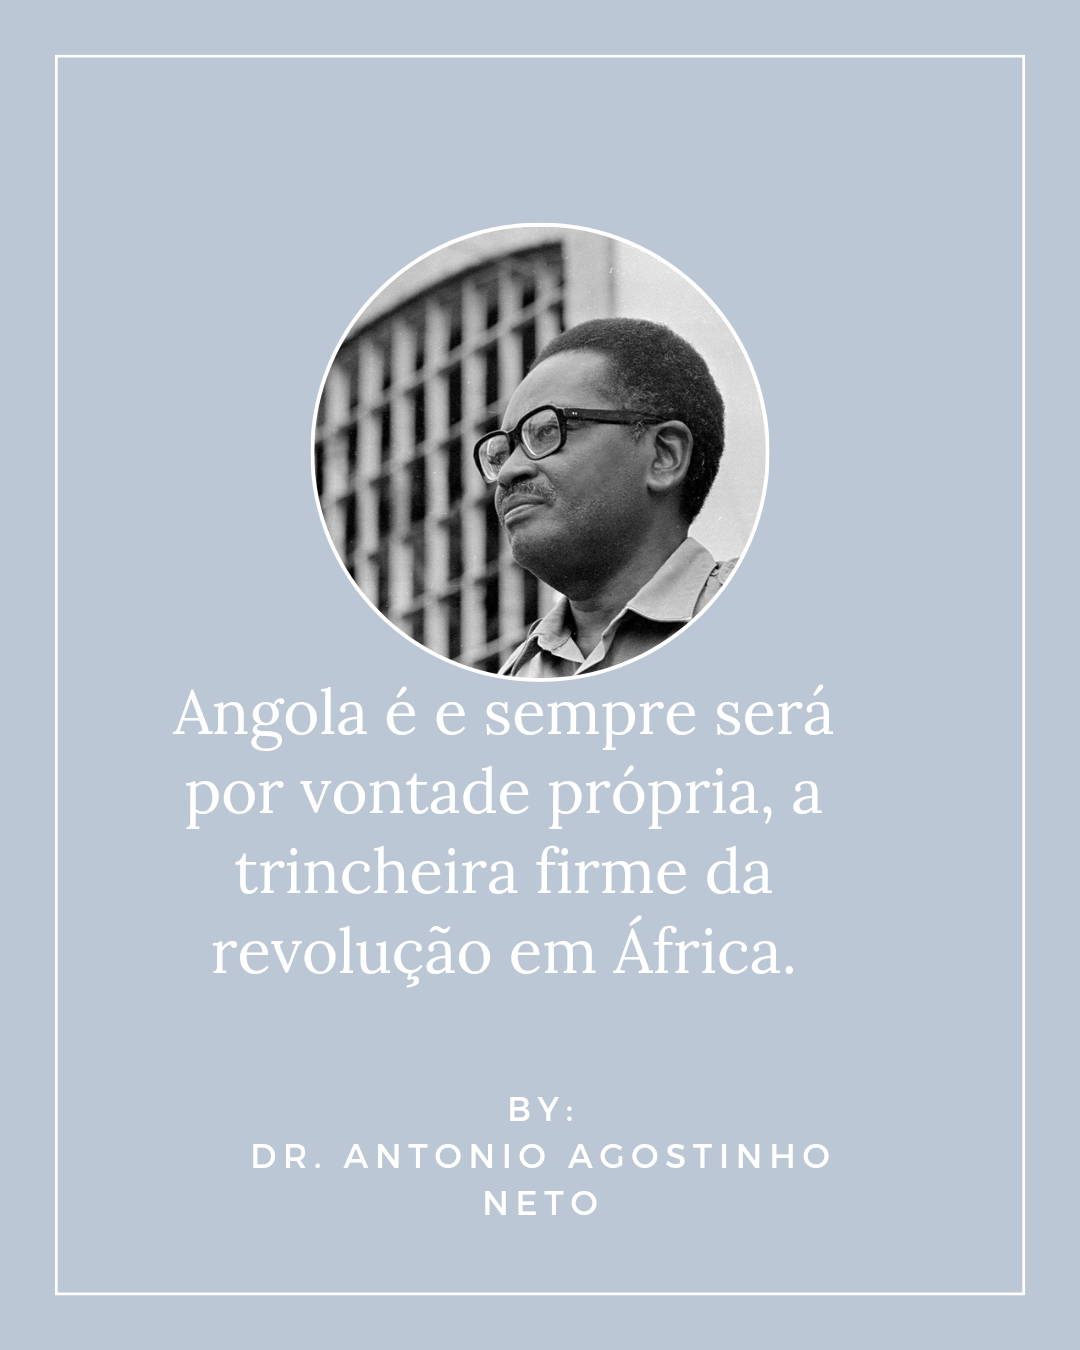 Imagem com frase do Dr. Agostinho Neto.